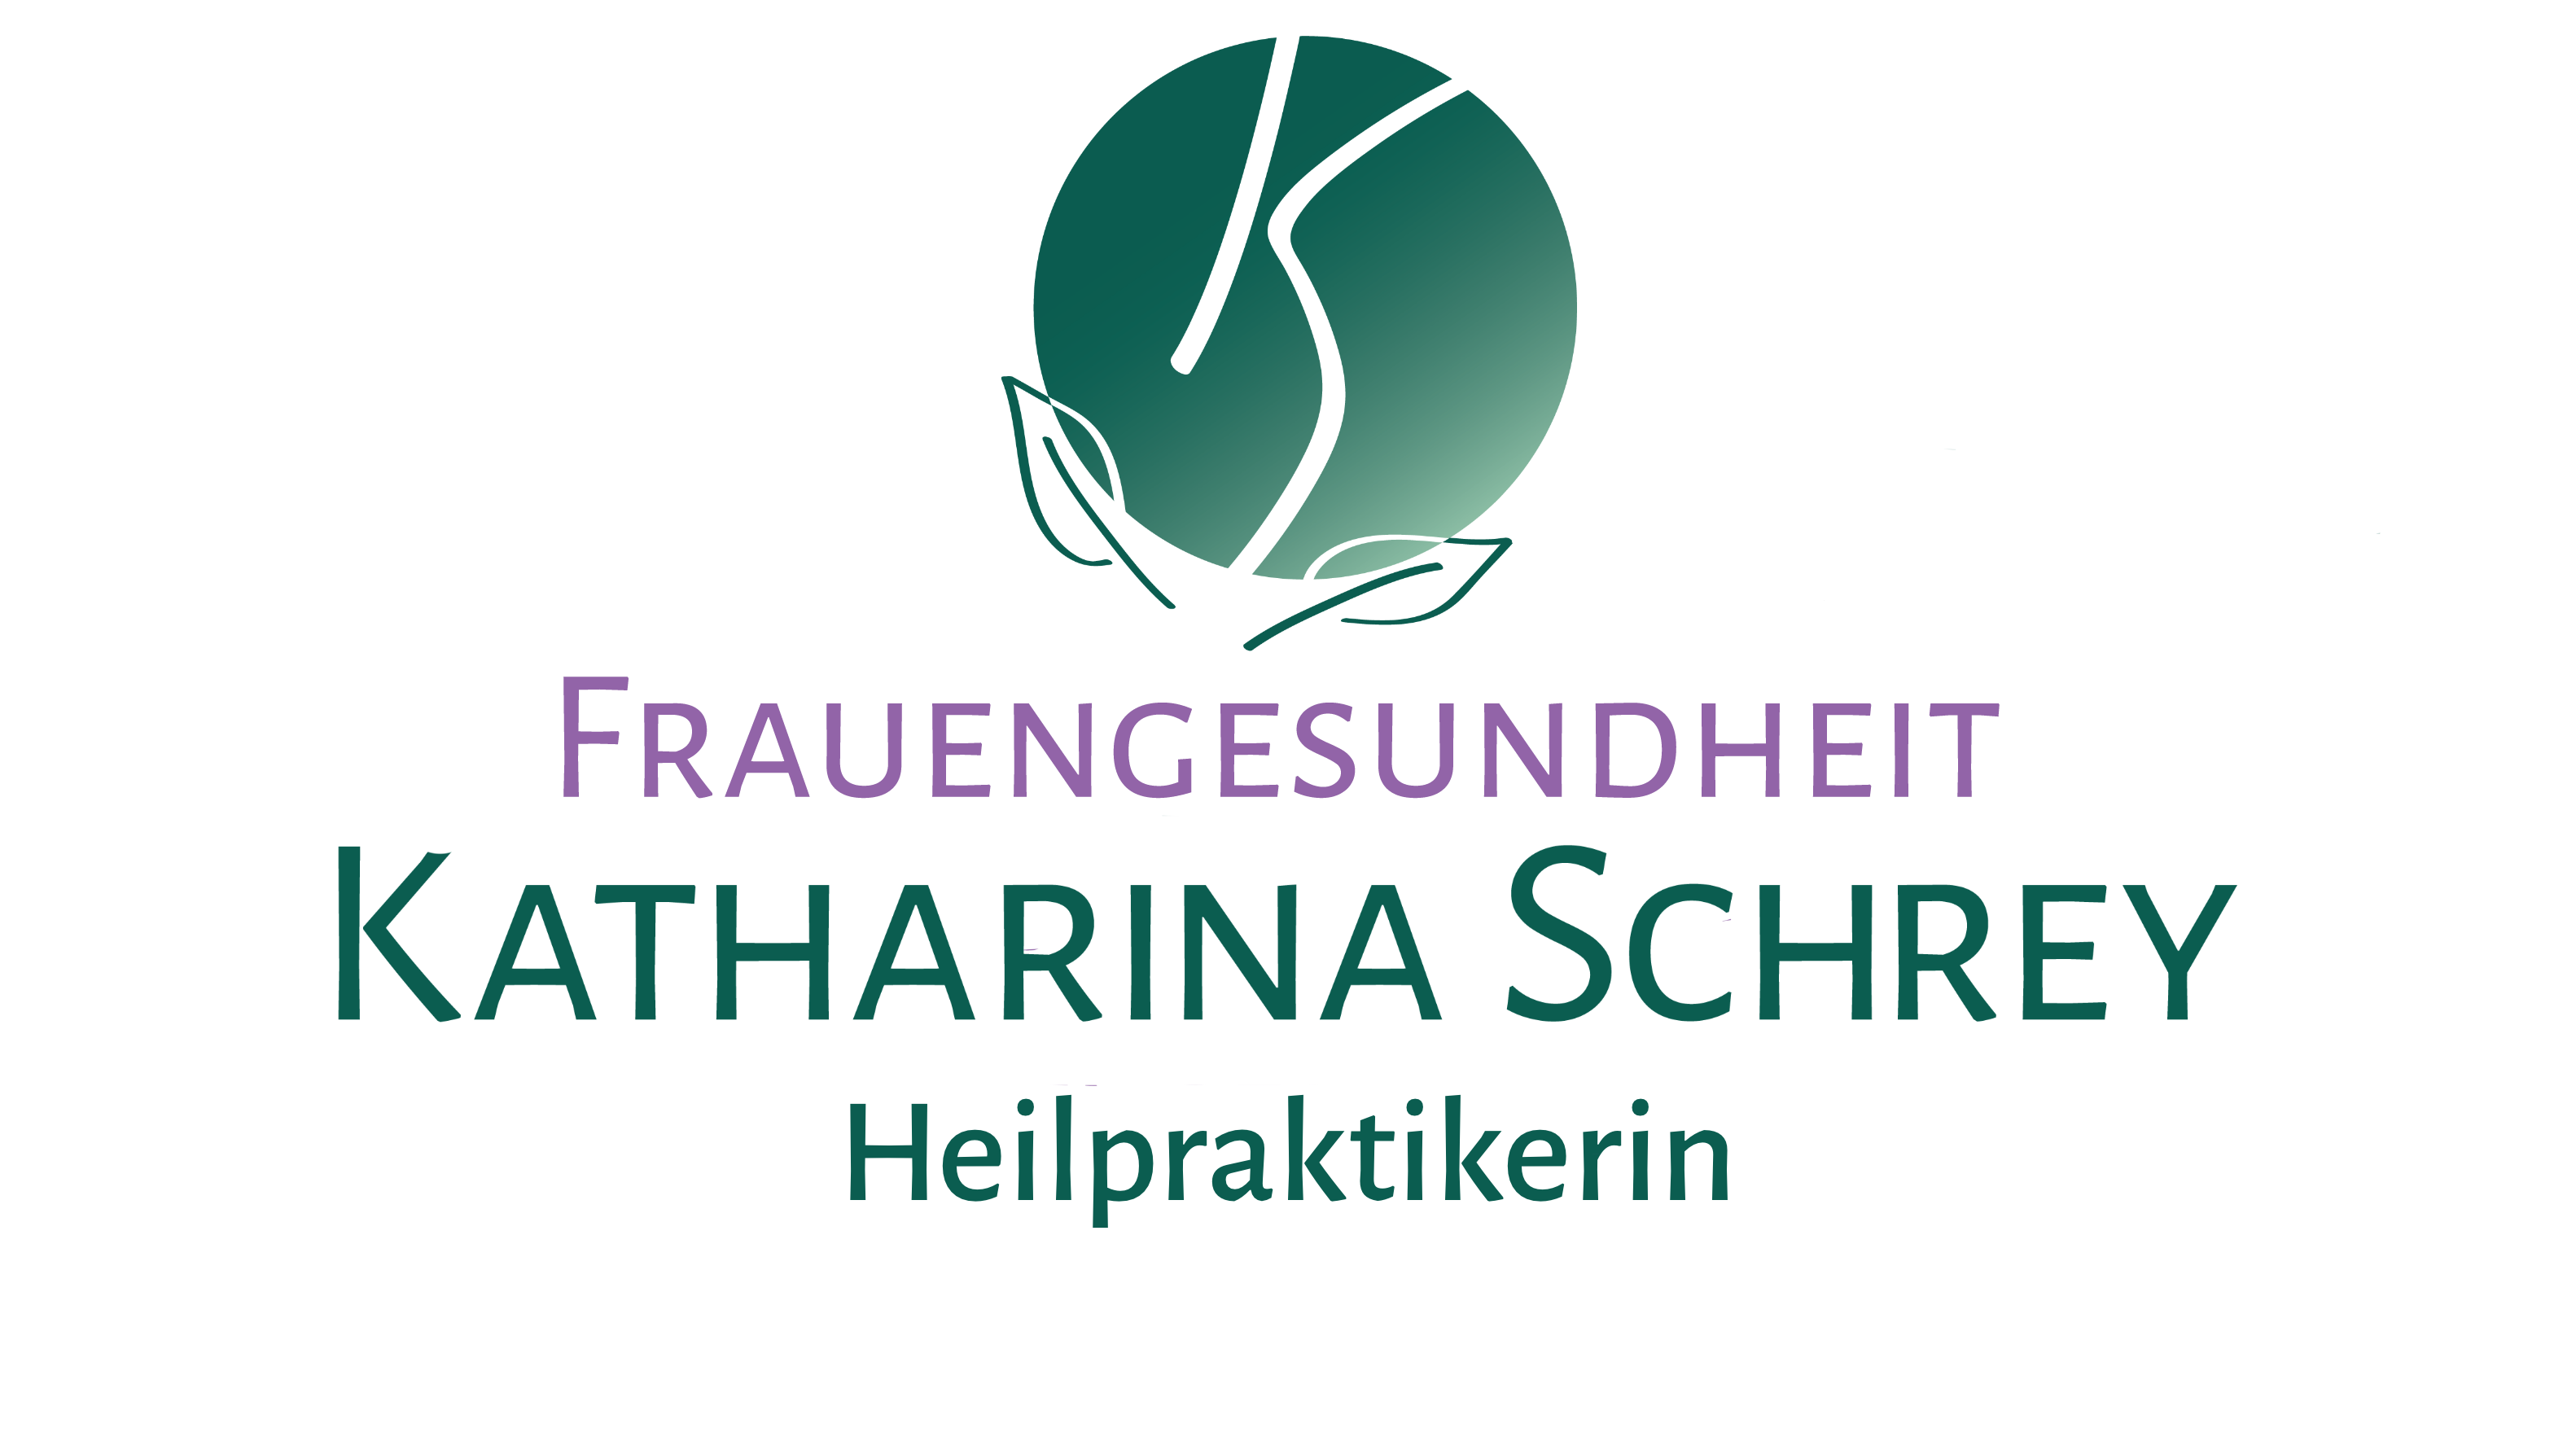 Katharina Schrey Frauengesundheit